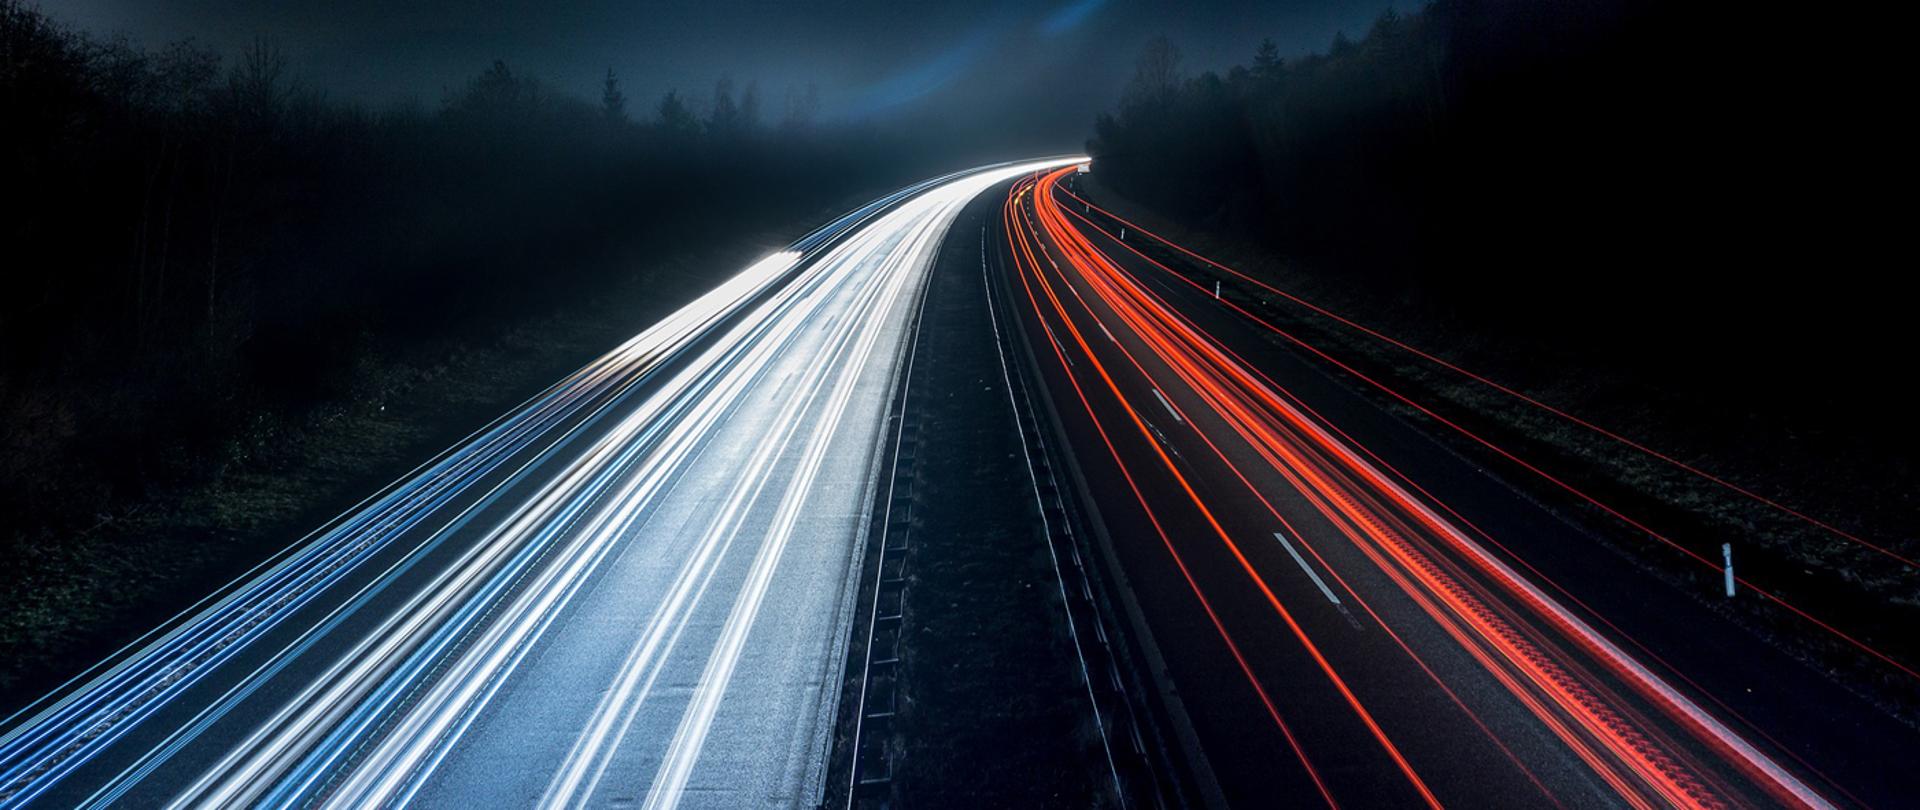 zdjęcie drogi nocą: światła przejeżdżających samochodów tworzą równoległe linie światła białego i czerwonego